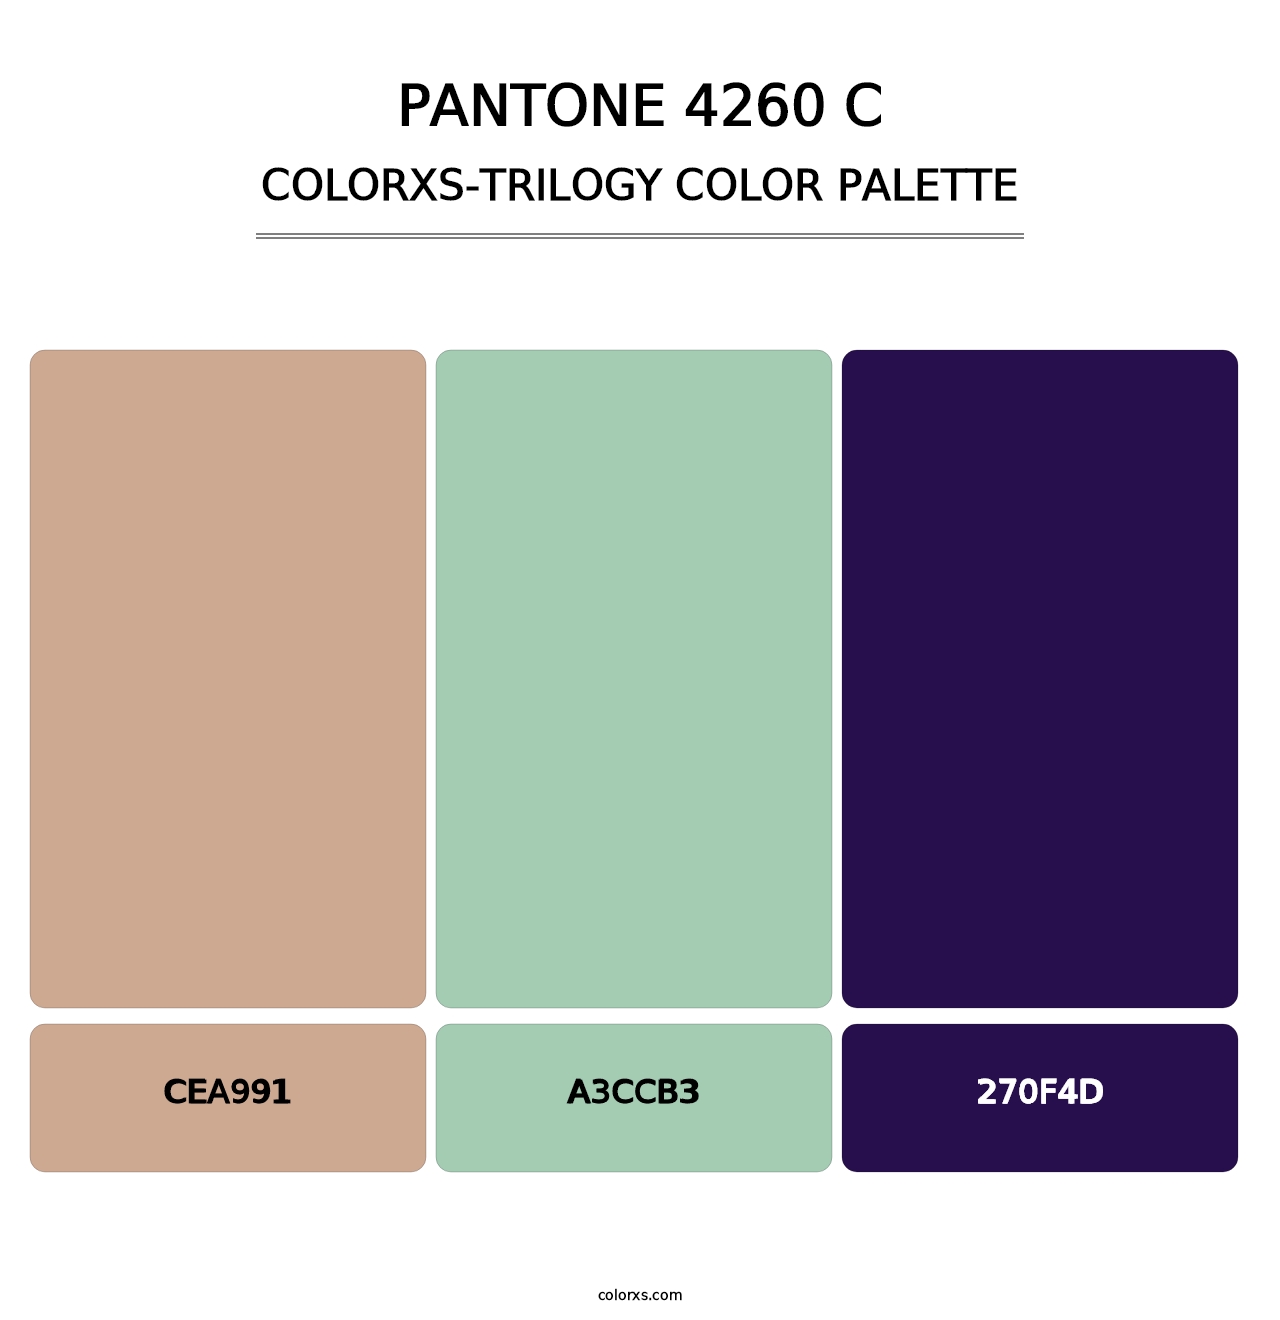 PANTONE 4260 C - Colorxs Trilogy Palette